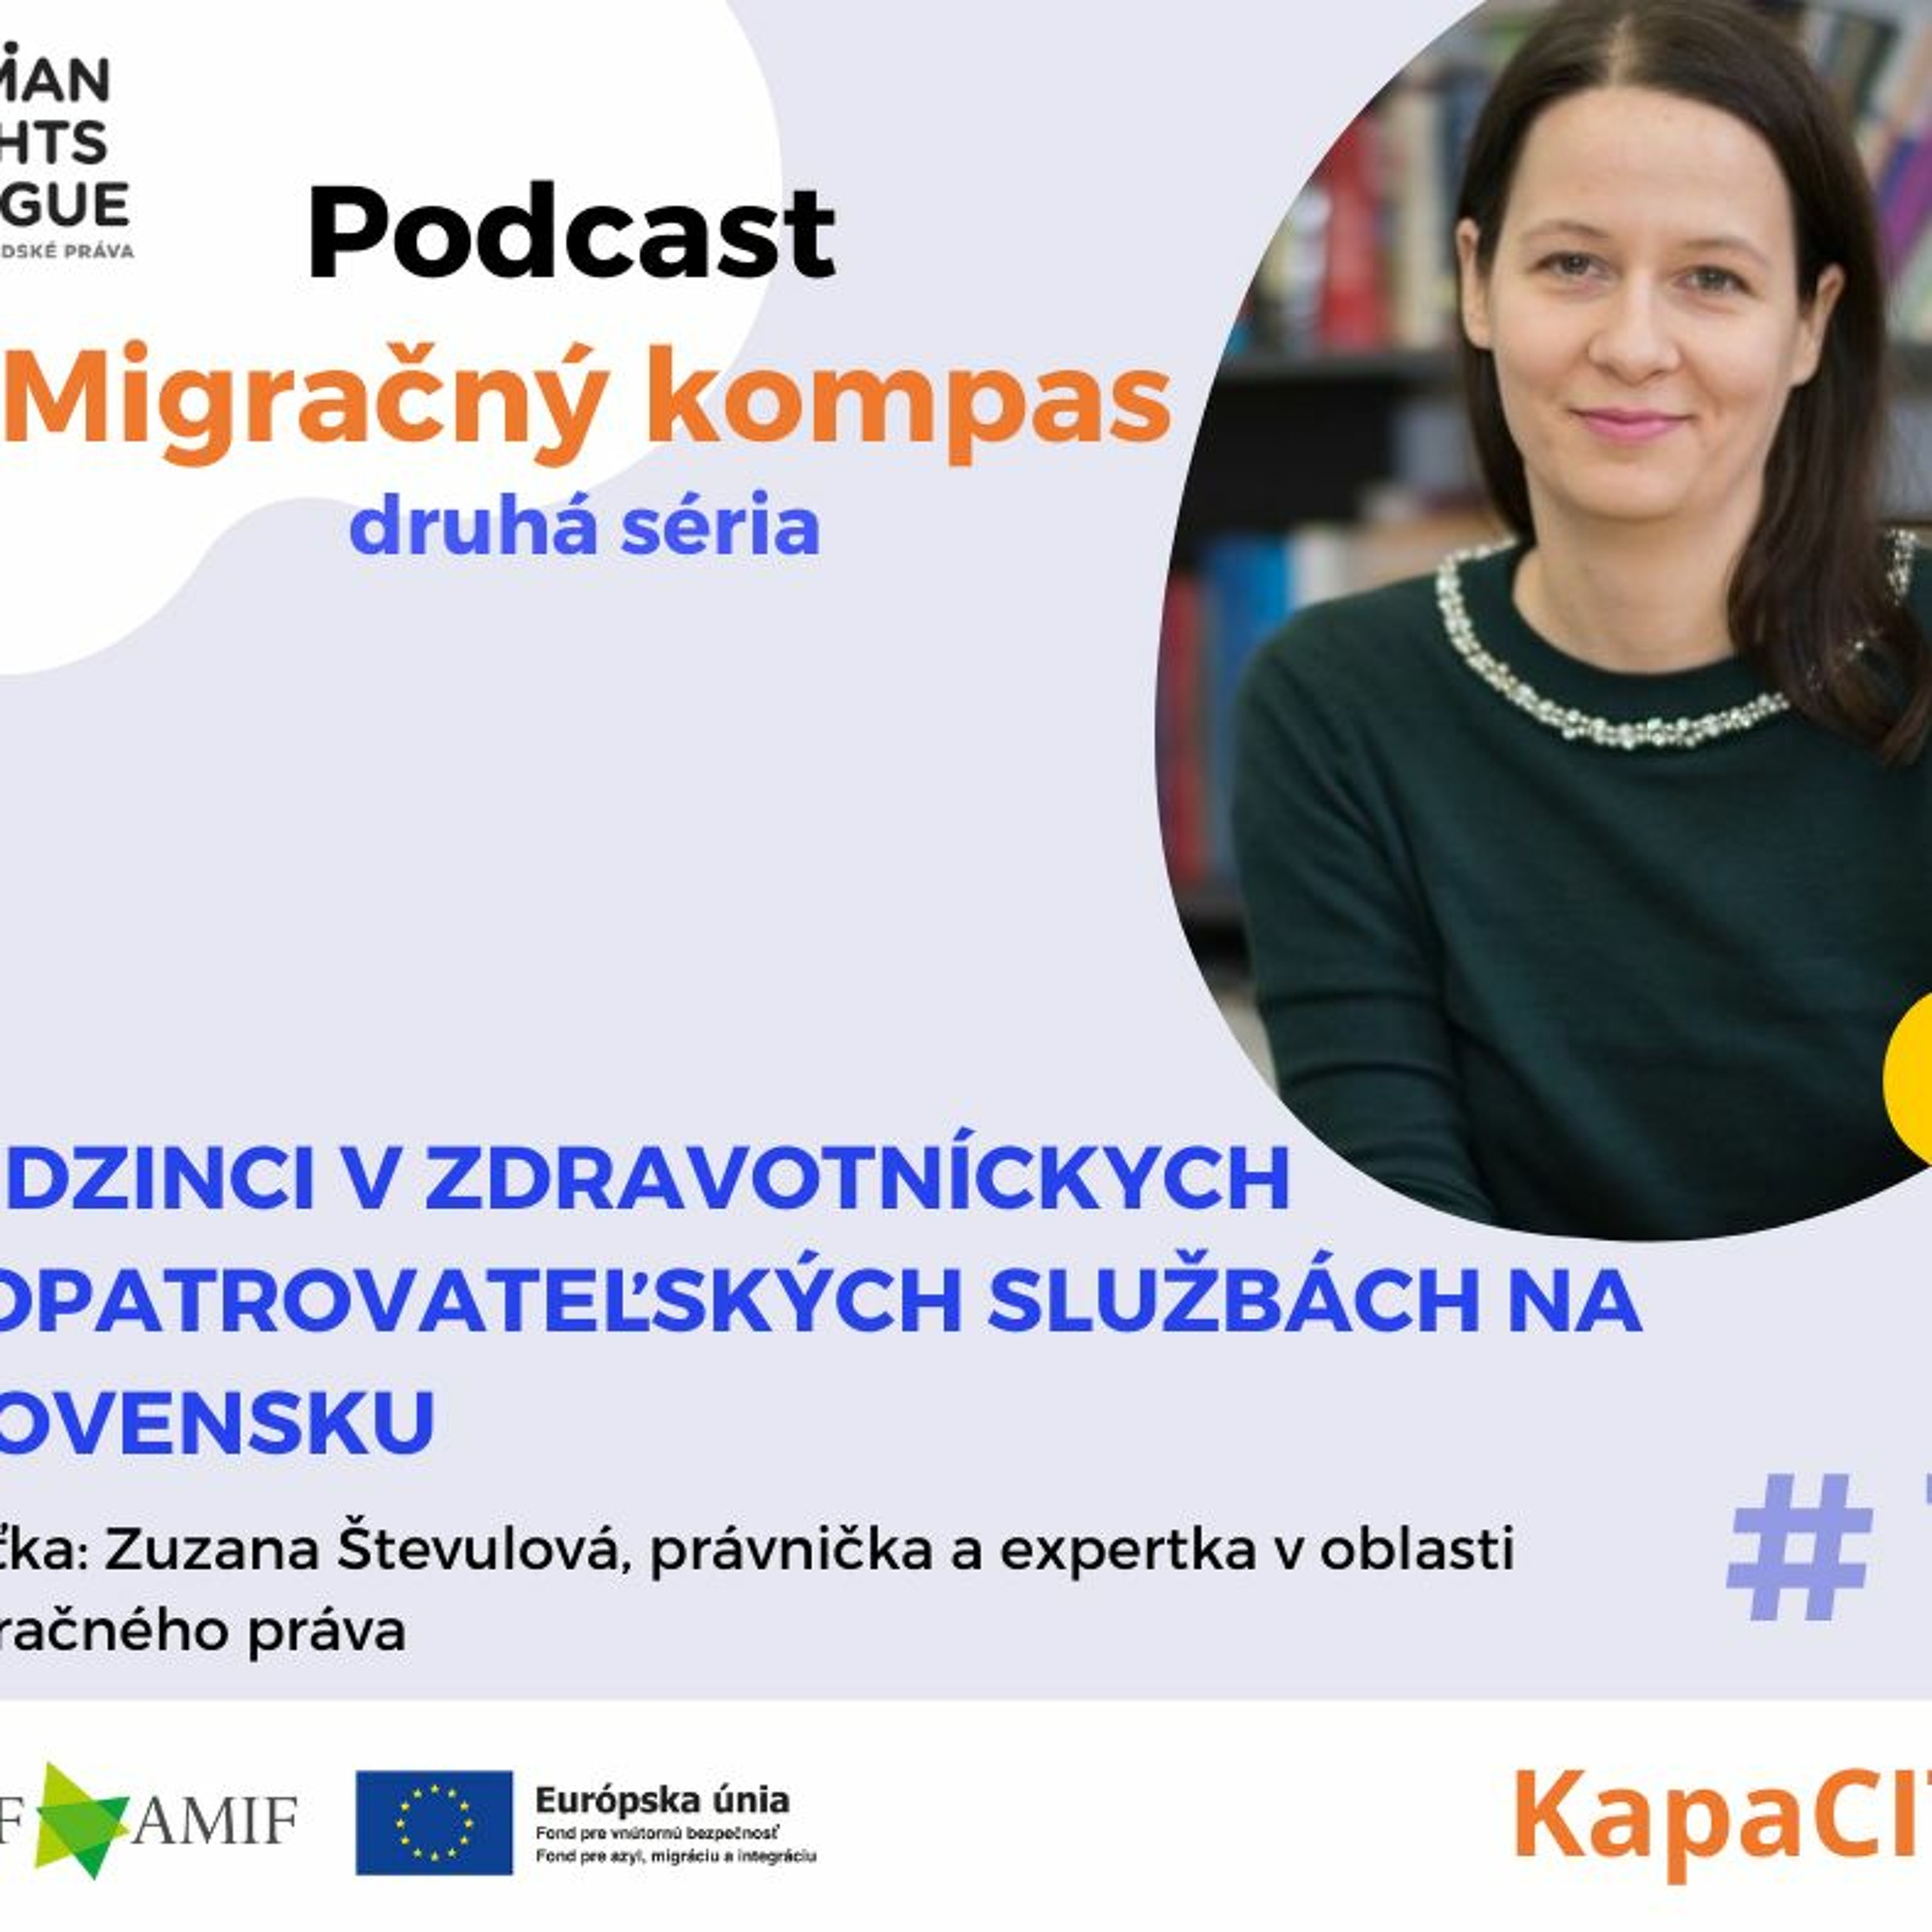 Podcast Migračný kompas: Cudzinci v zdravotníckych a opatrovateľských službách na Slovensku